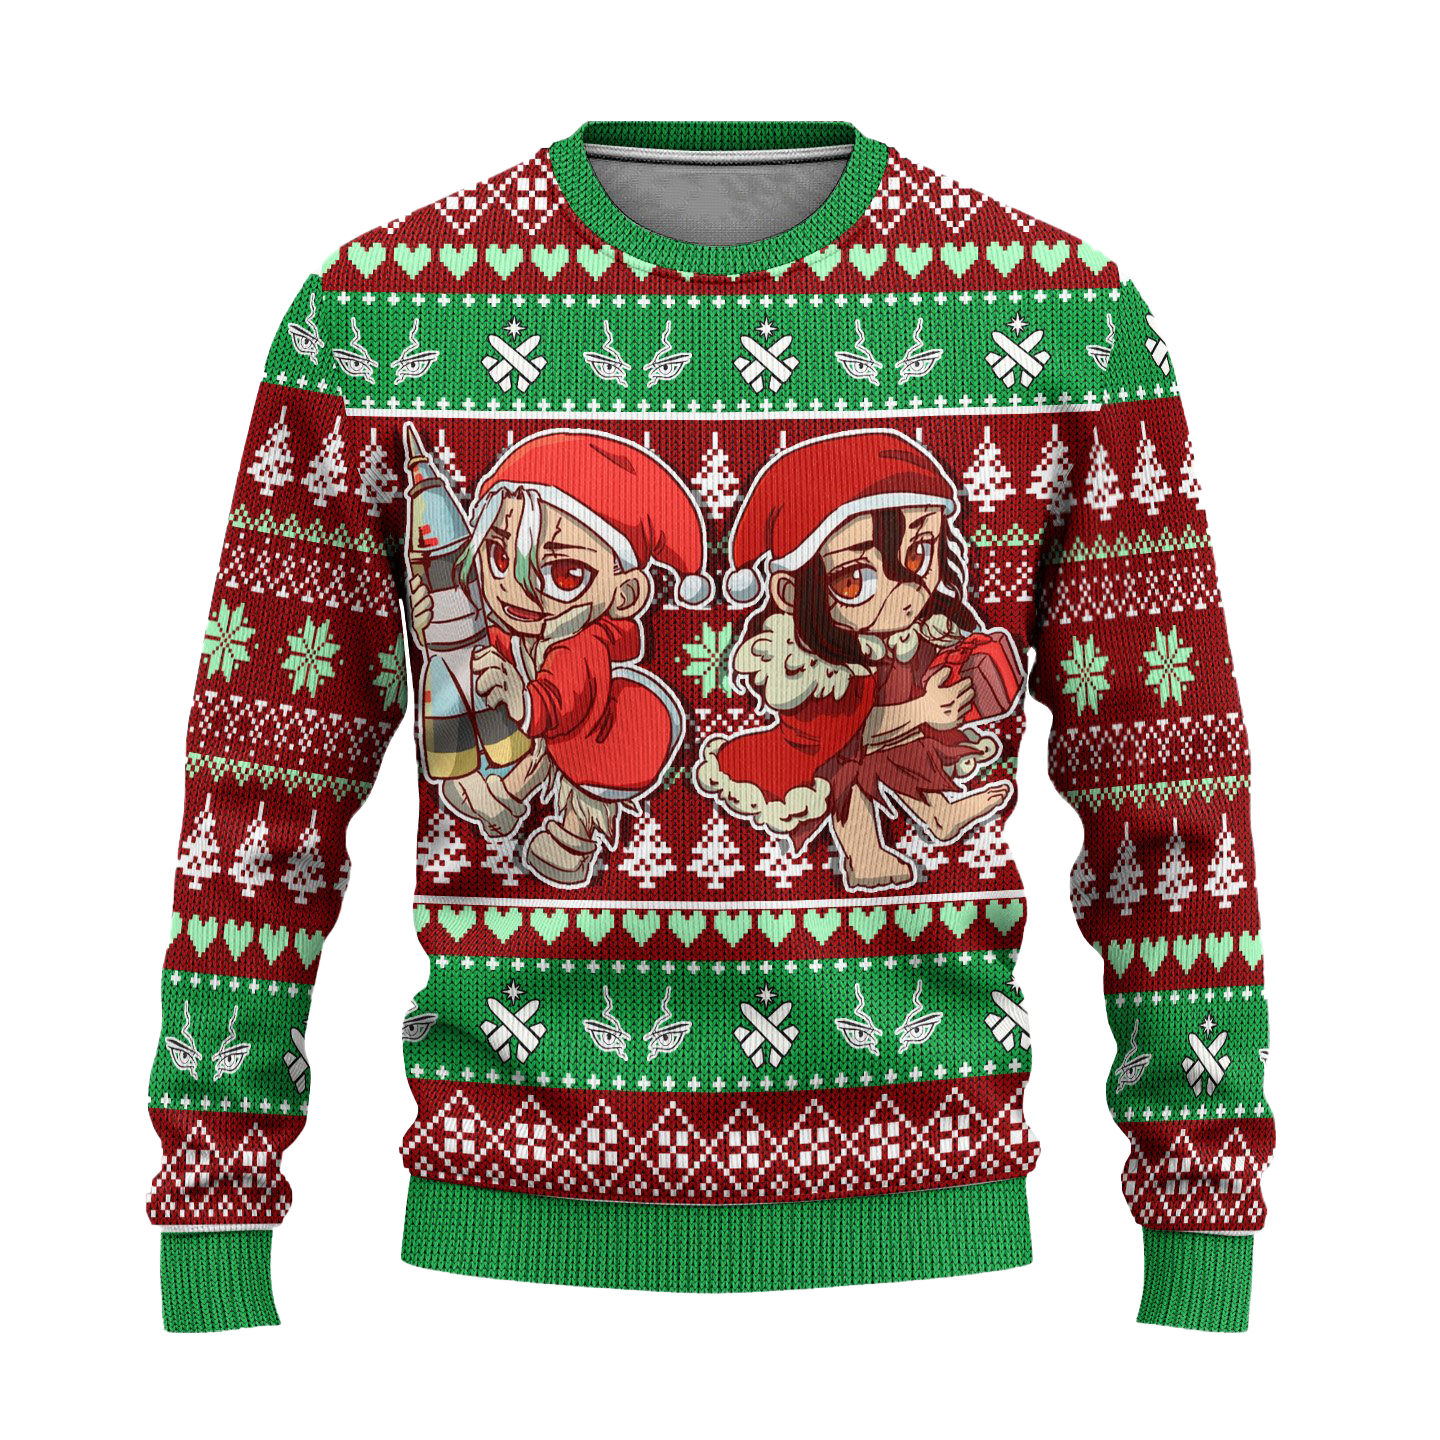 Senku x Tsukasa Anime Ugly Christmas Sweater Custom Dr Stone Xmas Gift